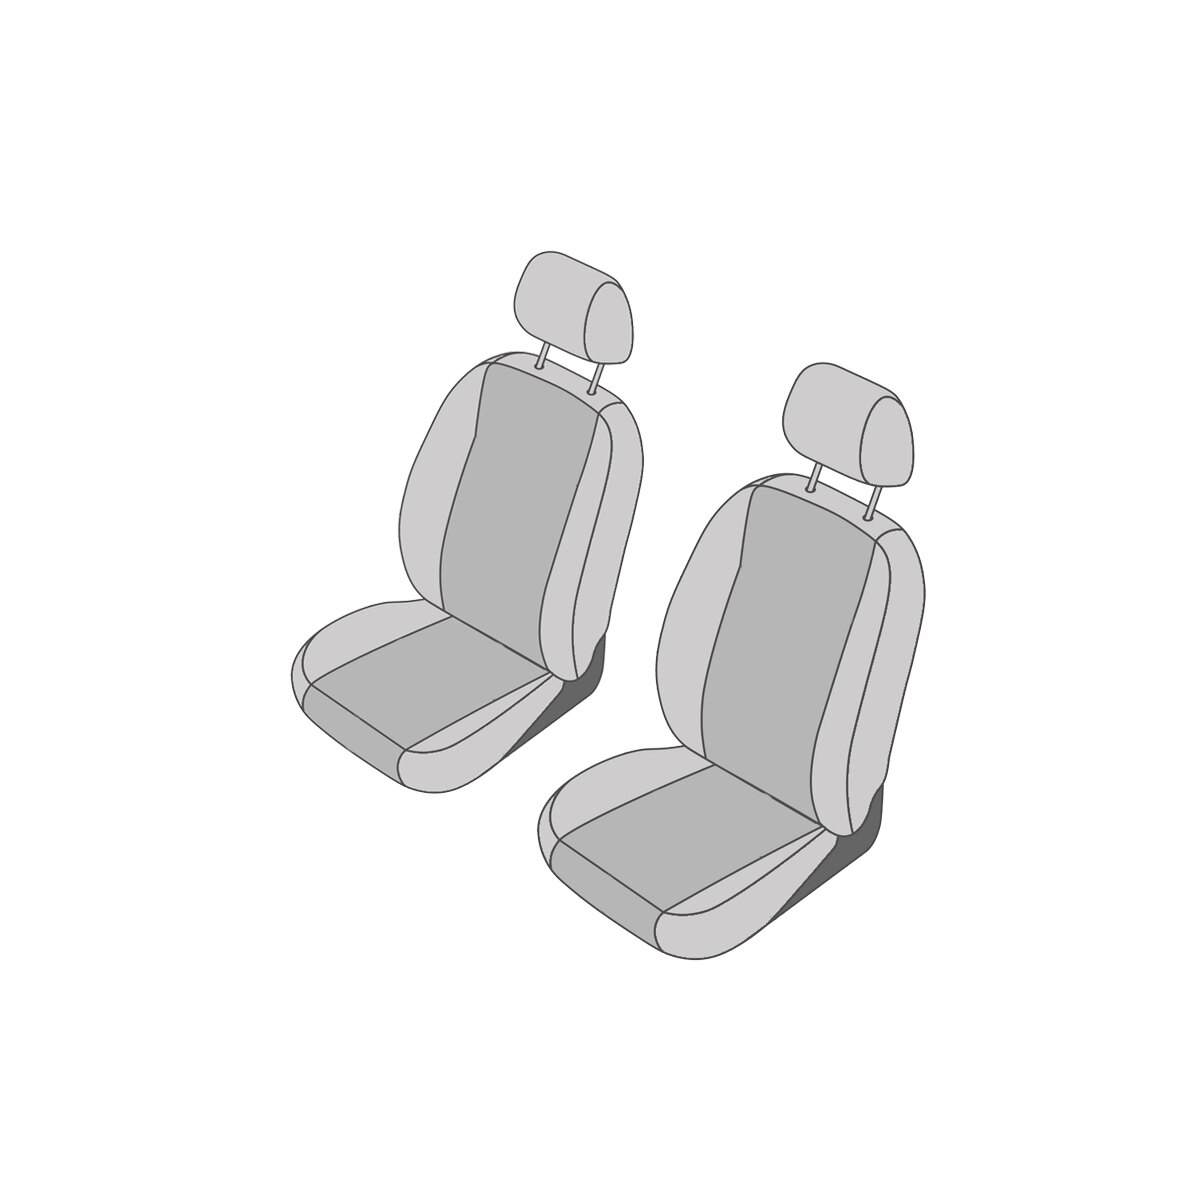 MAN TGE (ab 2017) Sitzbezug selbst konfigurieren – DriveDressy